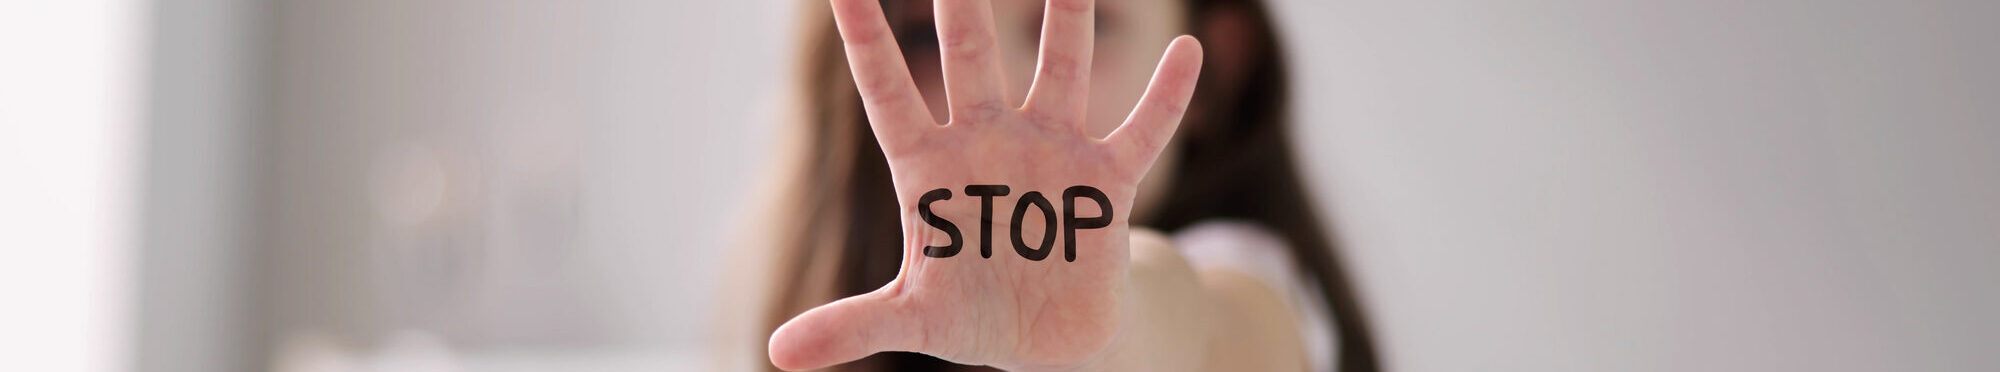 Ein Mädchen streckt zur Abwehr die Hand nach vorne. Darauf geschrieben steht das Wort "stop".